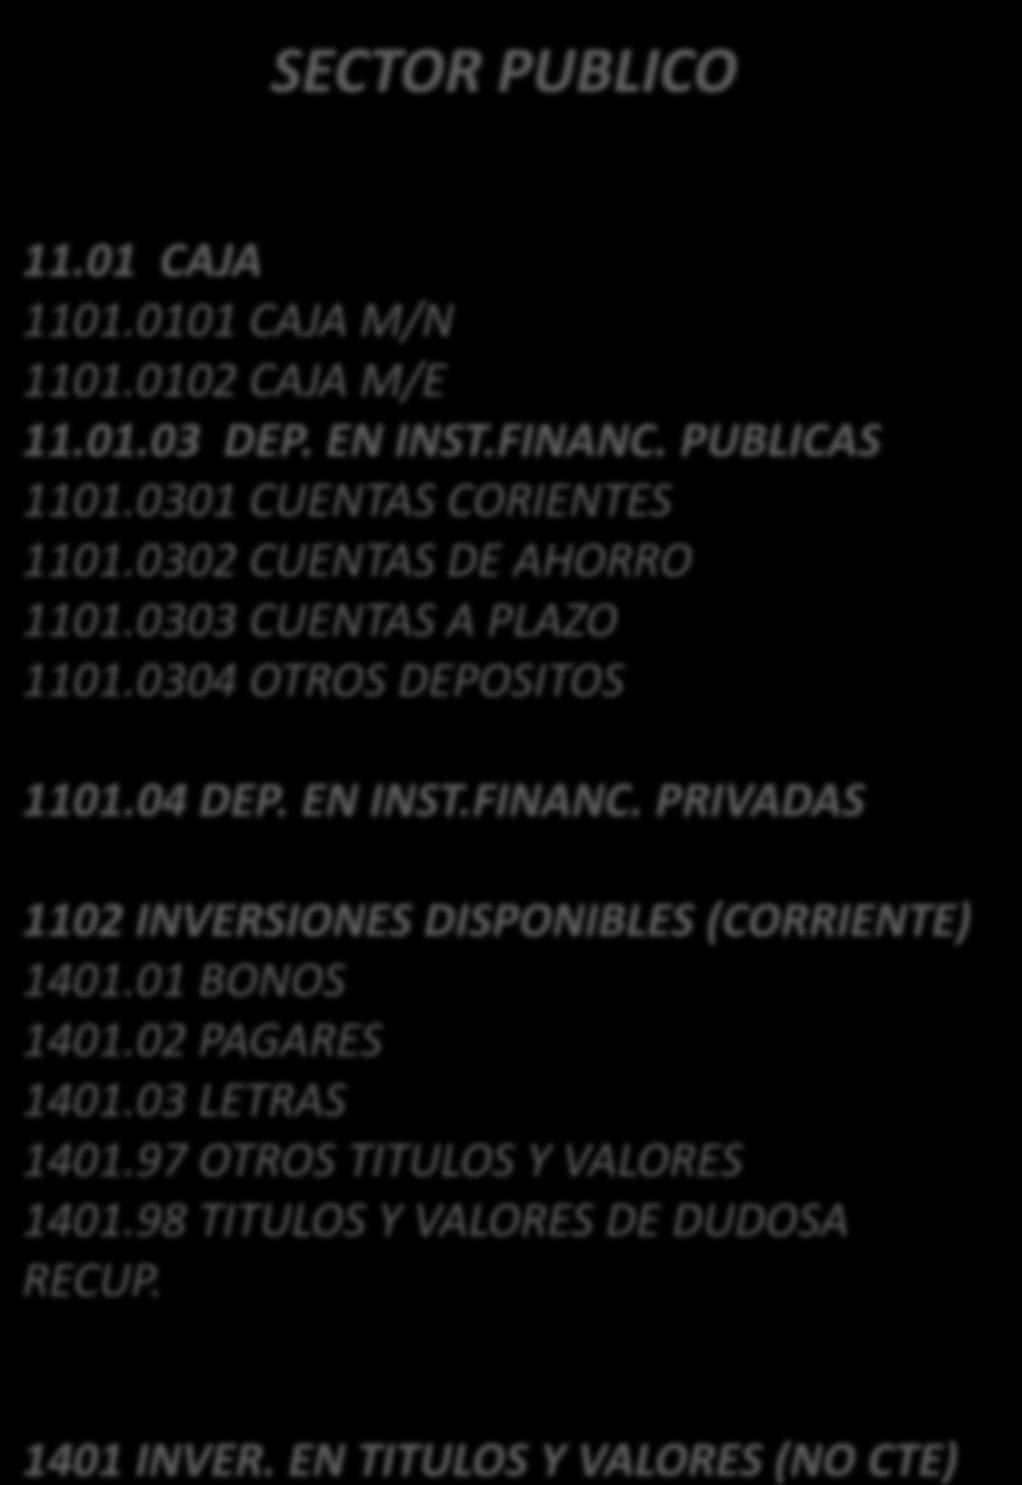 98 TITULOS Y VALORES DE DUDOSA RECUP. 1401 INVER. EN TITULOS Y VALORES (NO CTE) ENTIDADES EMPRESARIALES EFECTIVO Y EQUIVALENTE DE EFECTIVO/FONDOS DISPONIBLES CAJA CAJA M/N CAJA M/E DEP. EN INST.